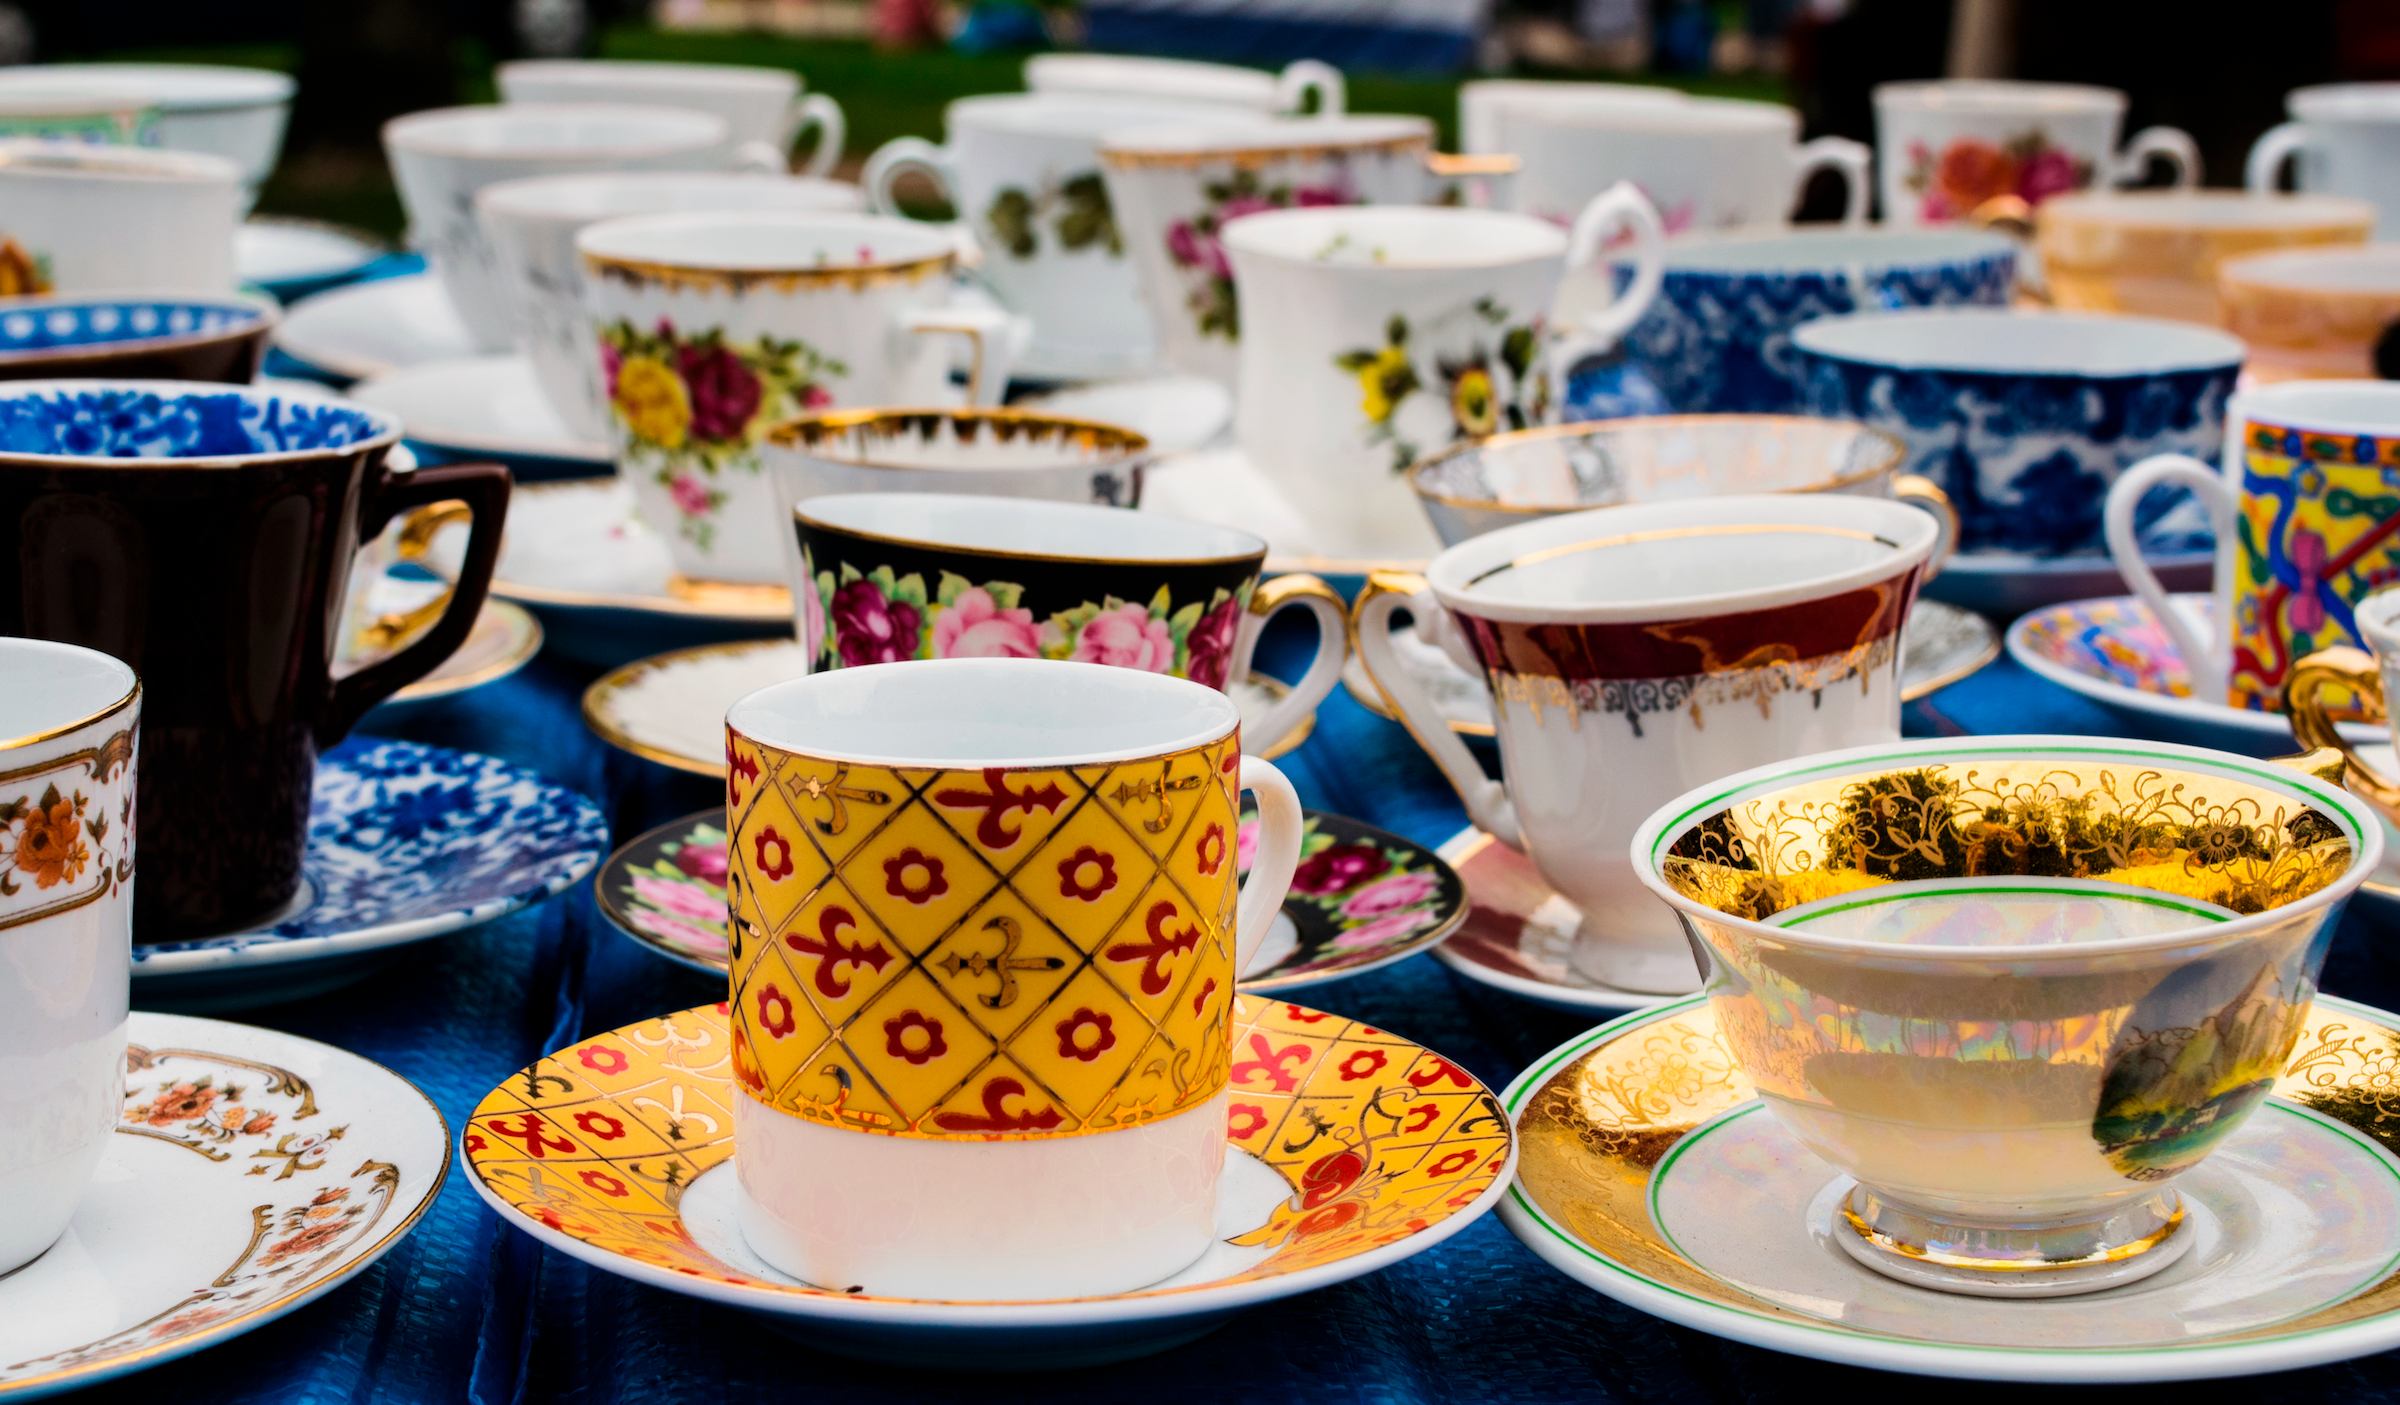 Cup, Coffee cup, Cup, Porcelain, Teacup, Tableware, Drinkware, Ceramic, Serveware, Saucer, 